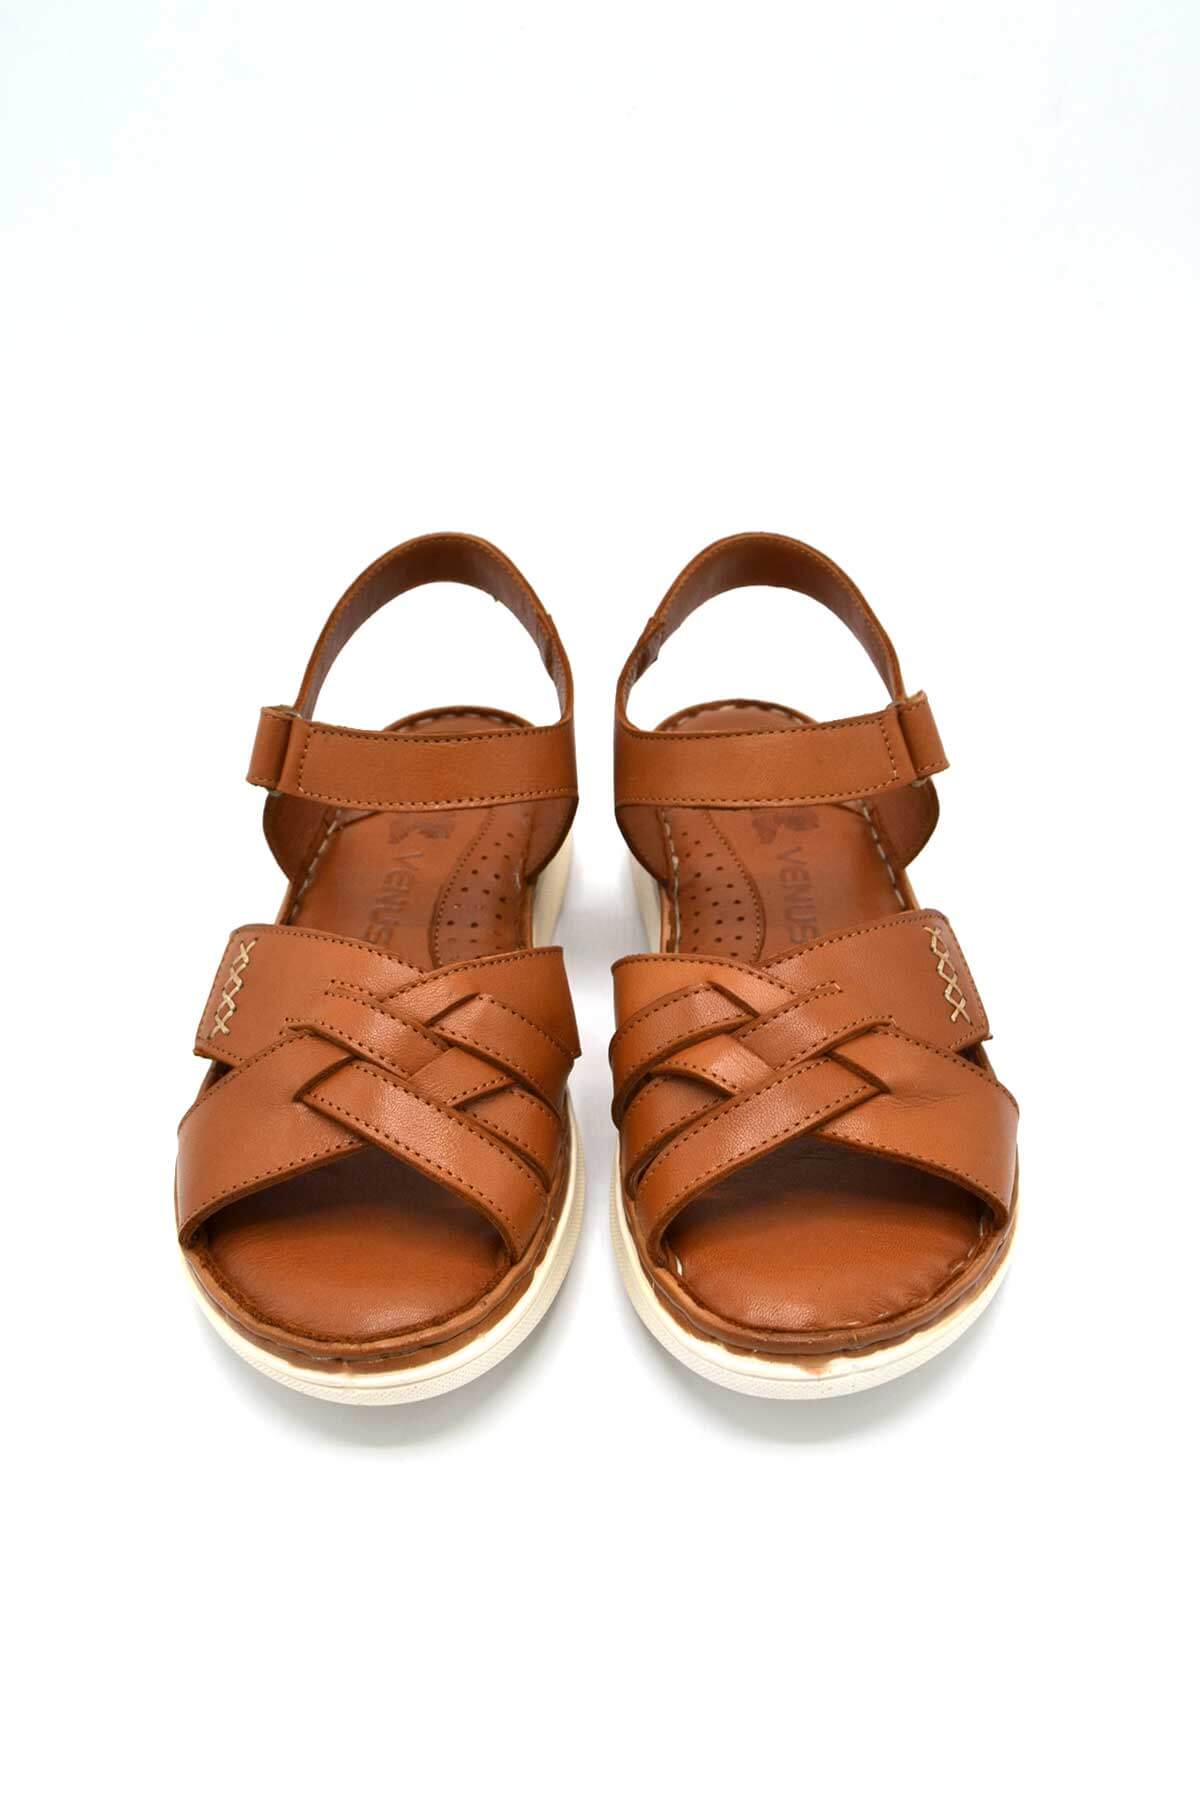 Kadın Comfort Deri Sandalet Taba 22981709 - Thumbnail